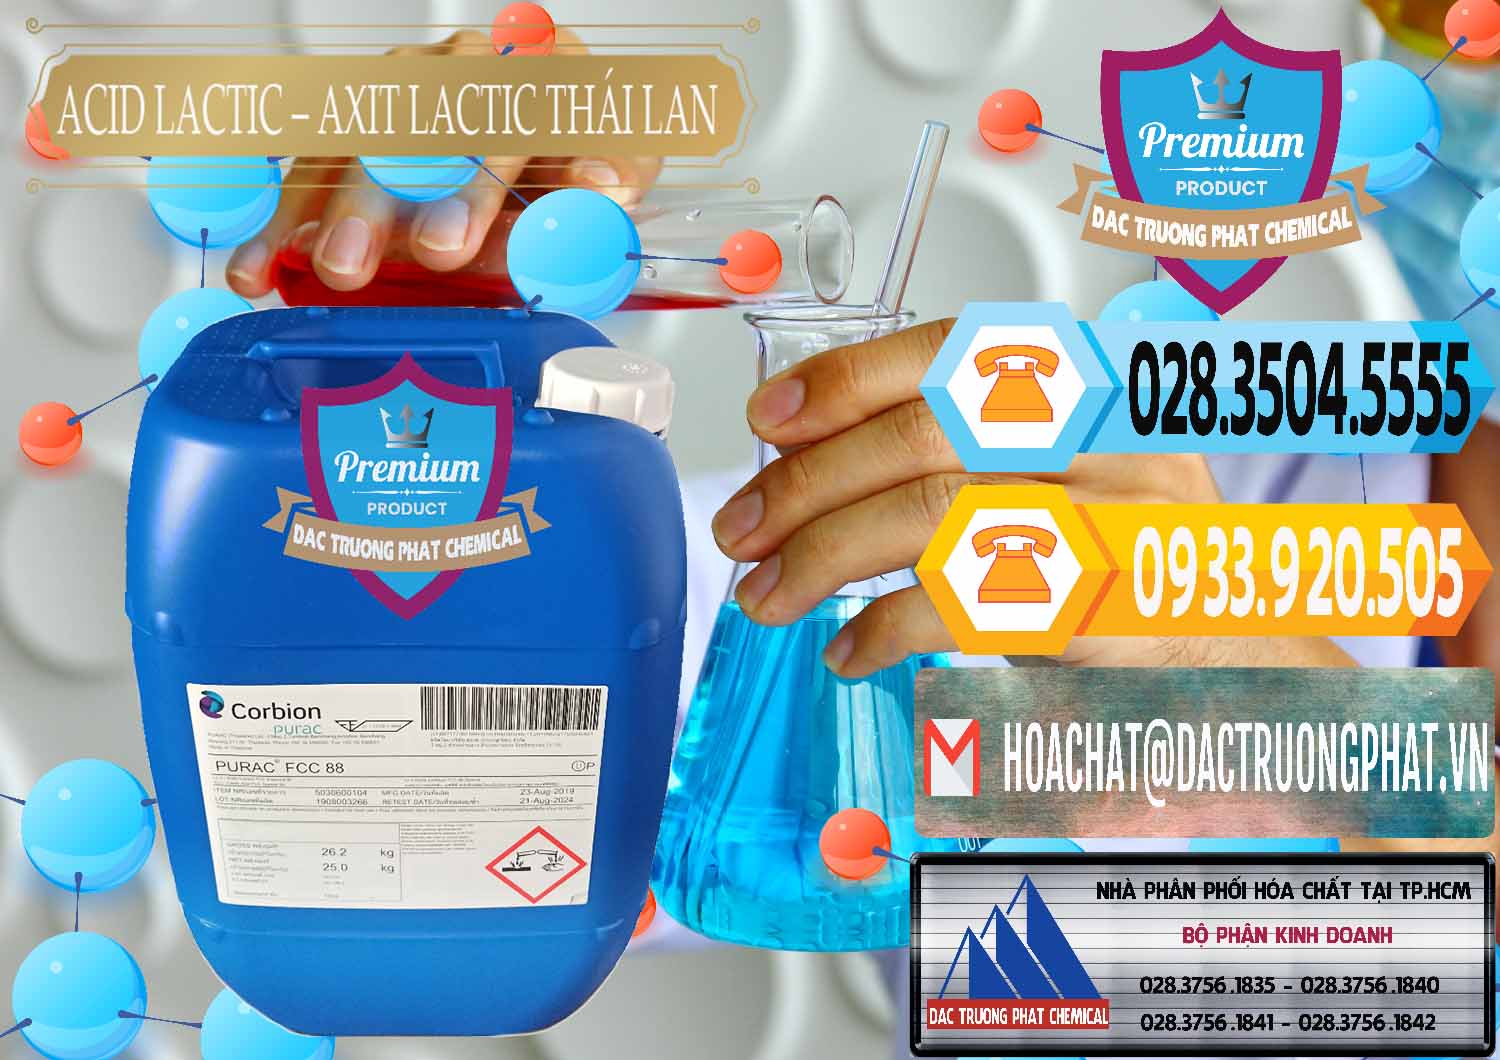 Công ty chuyên kinh doanh - bán Acid Lactic – Axit Lactic Thái Lan Purac FCC 88 - 0012 - Đơn vị chuyên phân phối & bán hóa chất tại TP.HCM - hoachattayrua.net